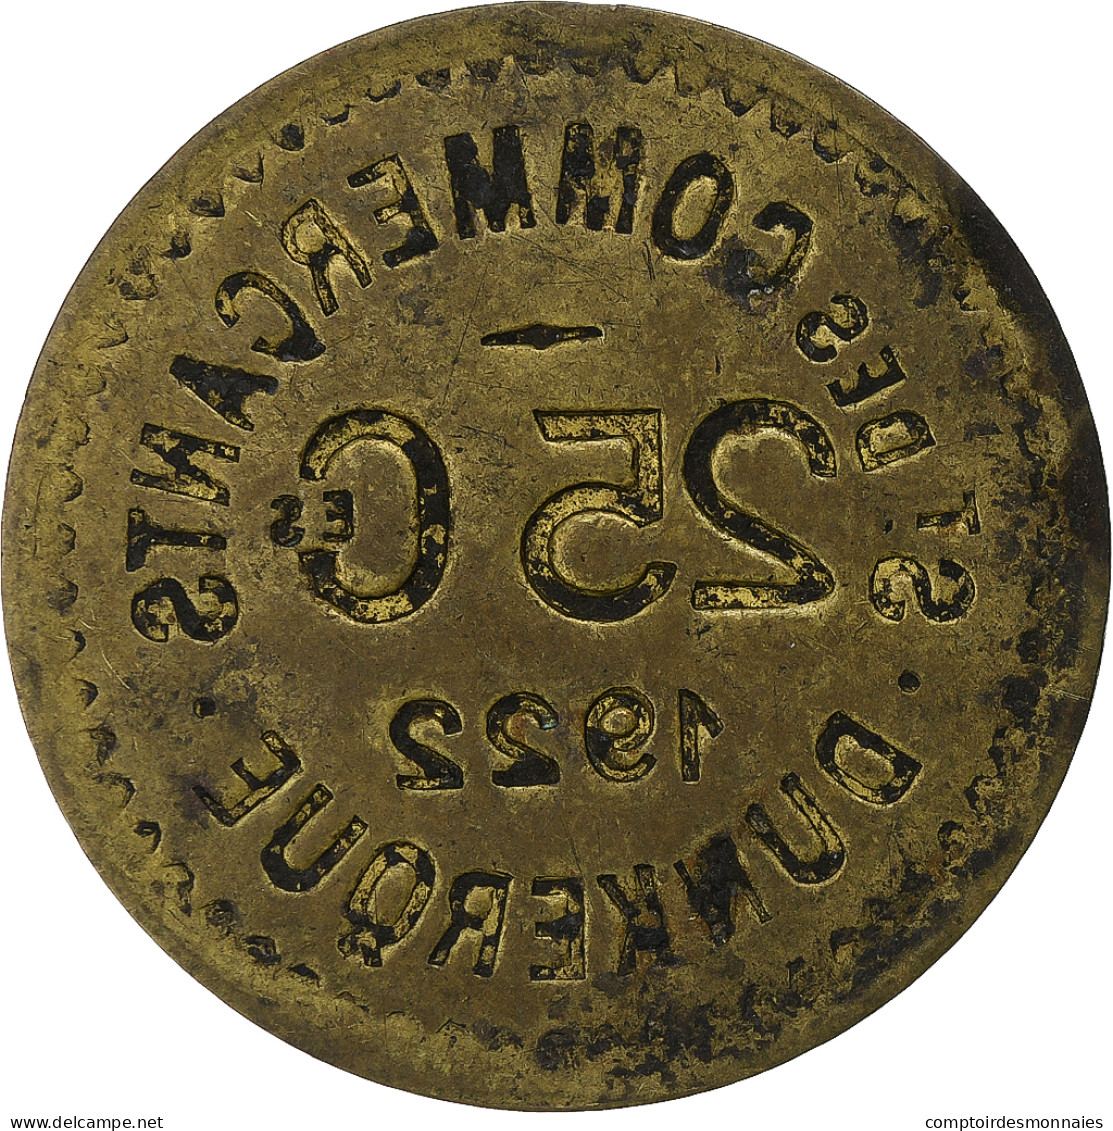 France, Société Des Commerçants - Dunkerque, 25 Centimes, 1922, TTB, Laiton - Monétaires / De Nécessité